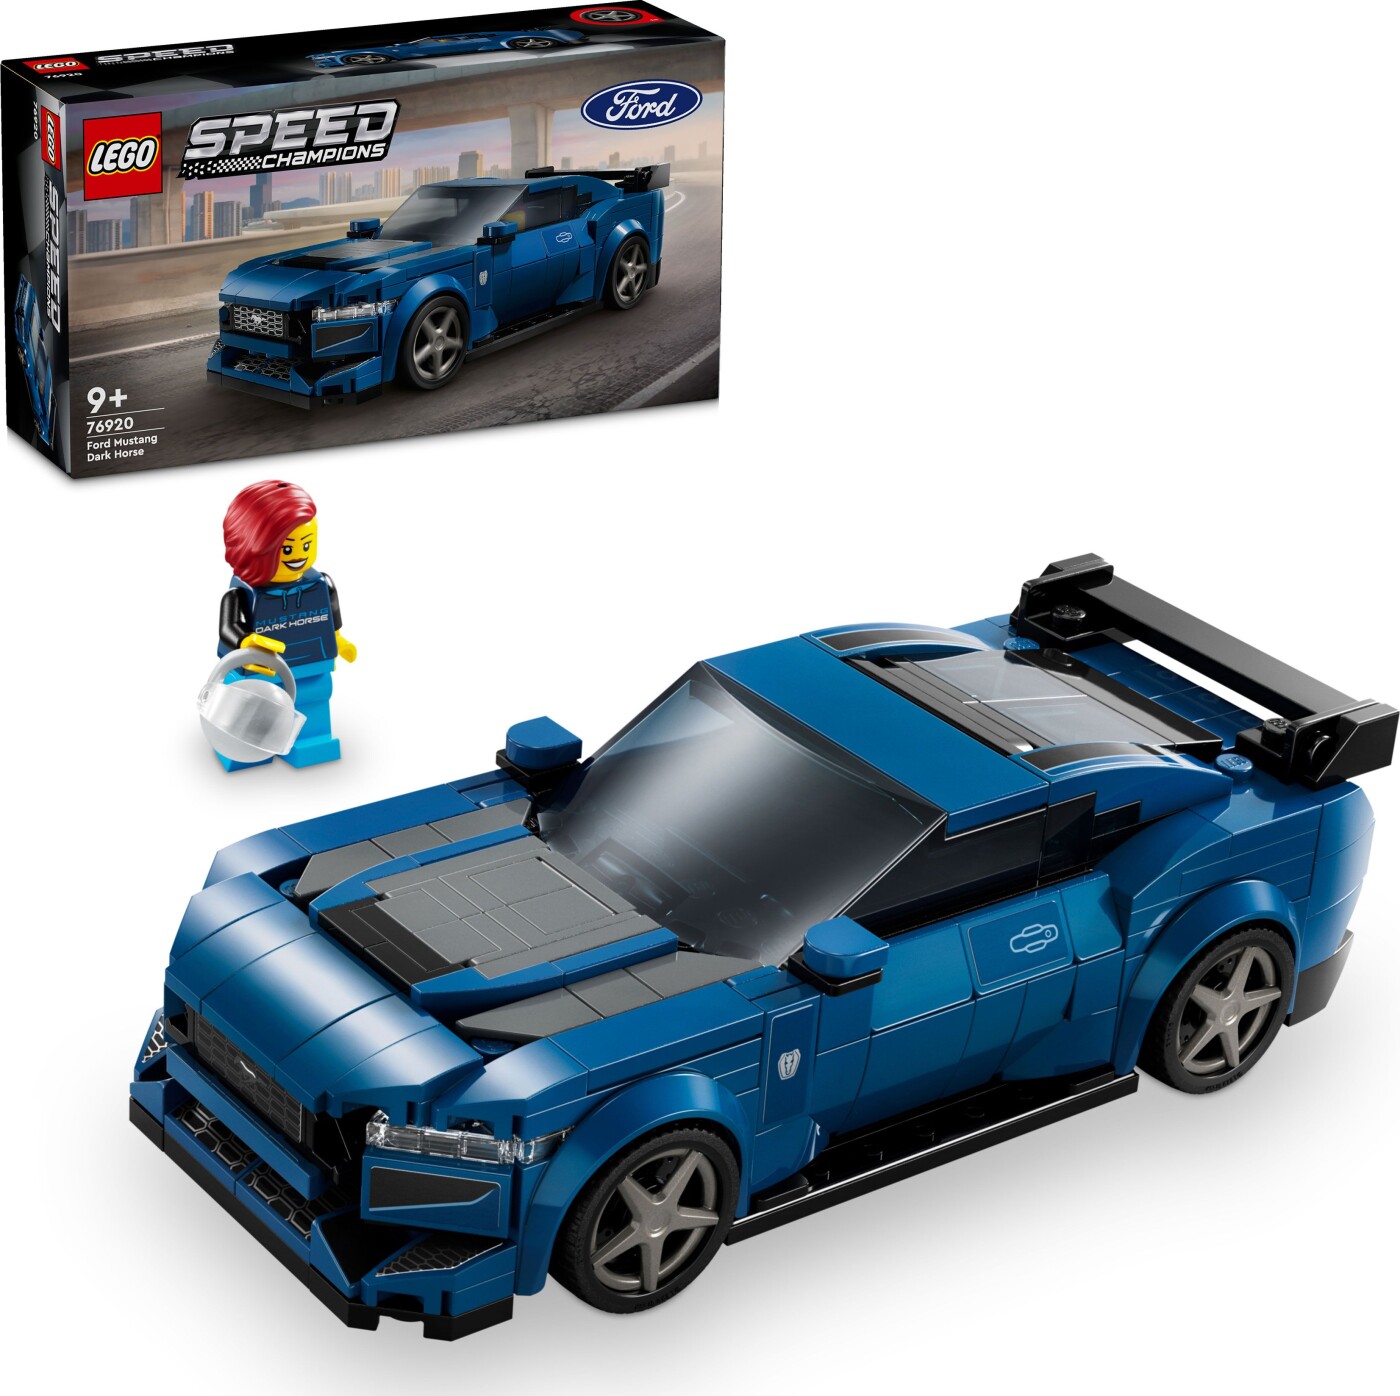 Billede af Lego Speed Champions - Ford Mustang Dark Horse-sportsvogn - 76920